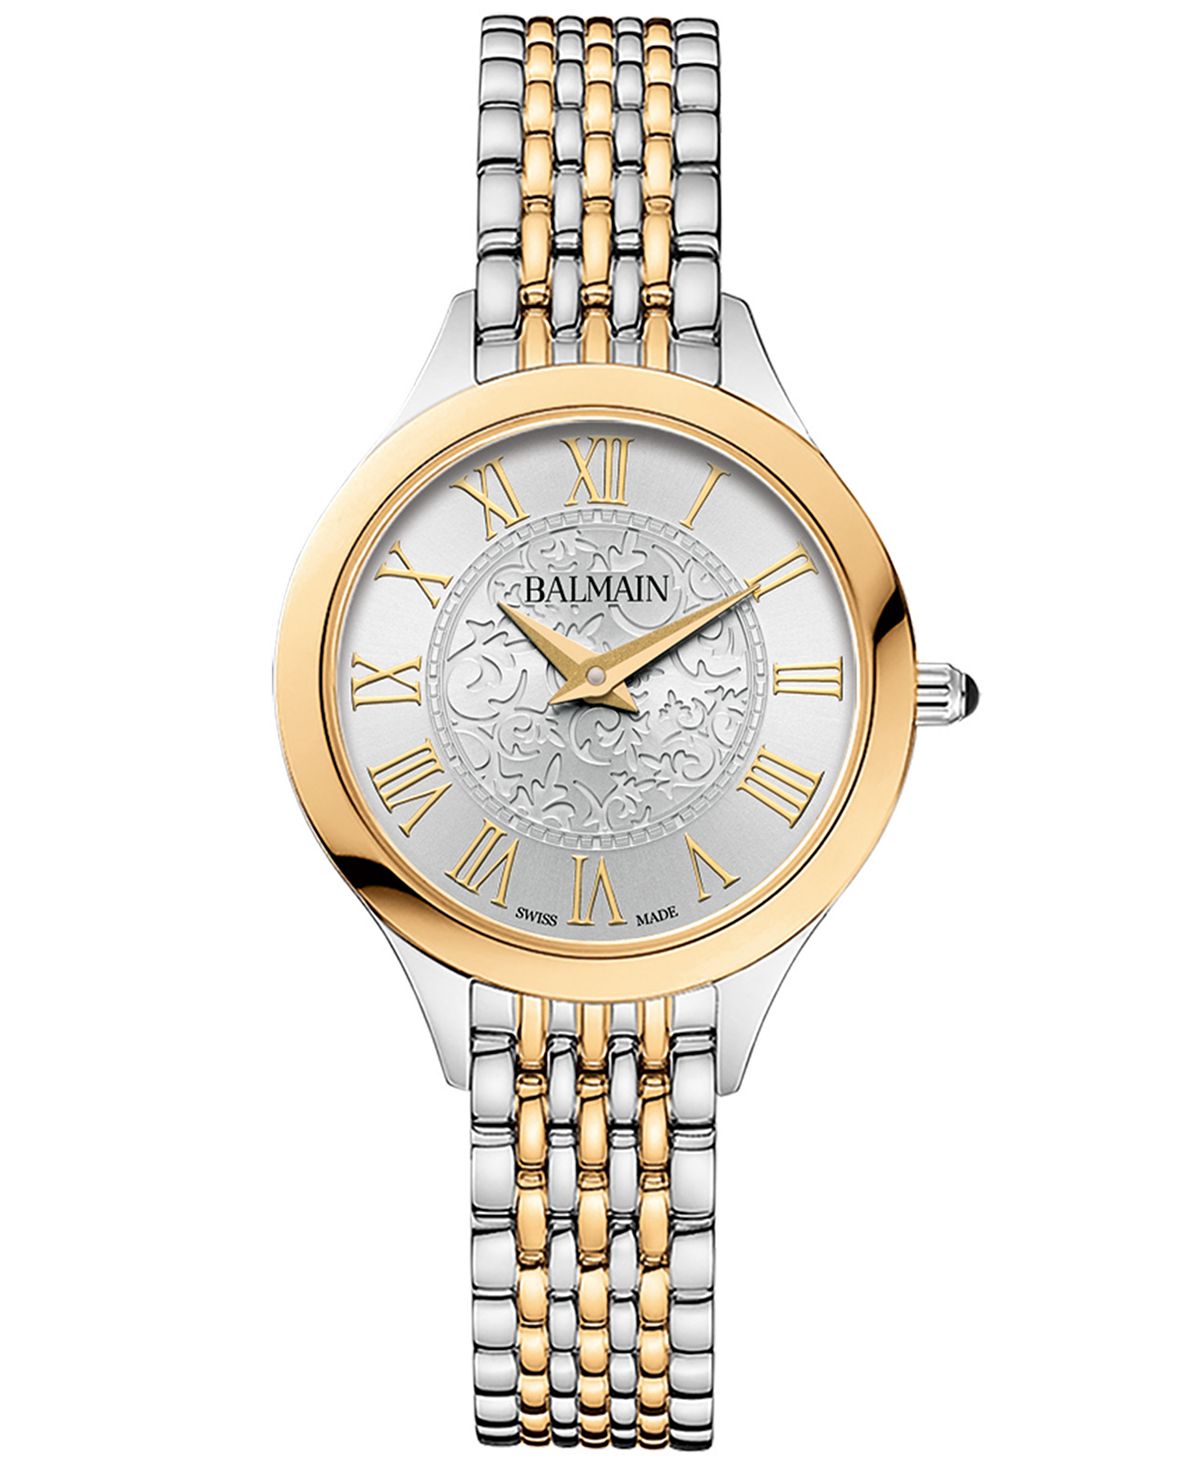 Женские швейцарские часы Balmain de Balmain с двухцветным браслетом из нержавеющей стали, 29 мм мужские швейцарские часы beleganza с двухцветным браслетом из нержавеющей стали 40 мм balmain